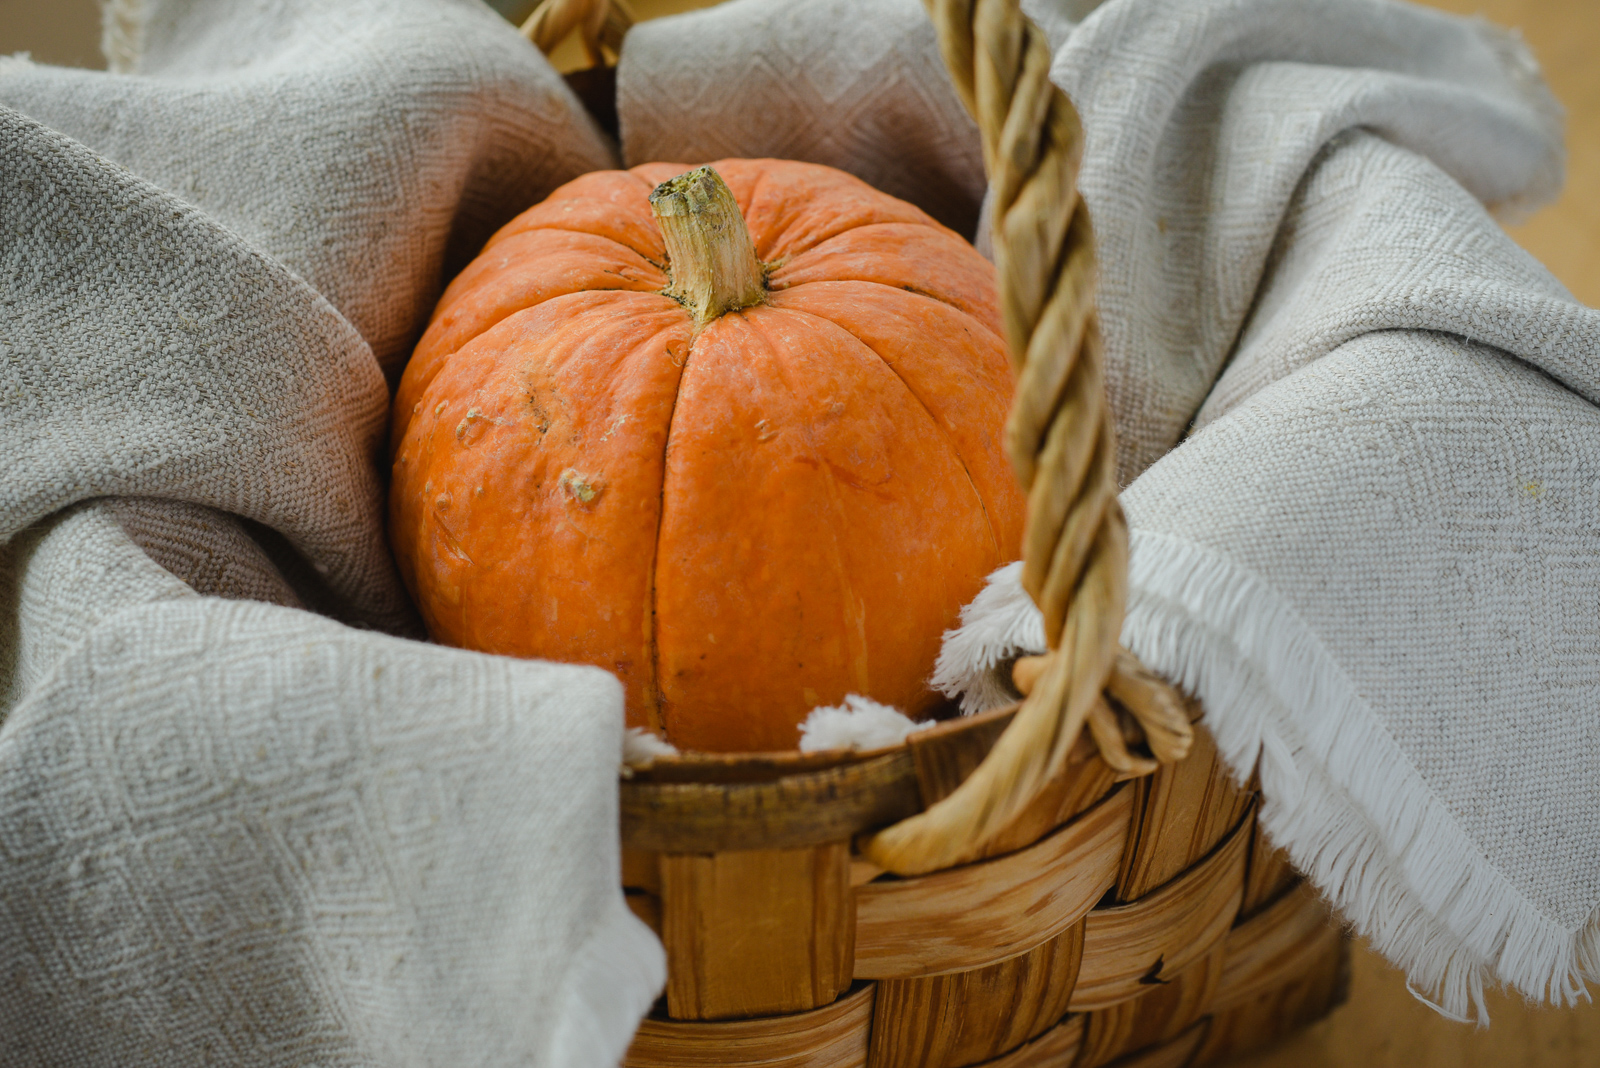 Pumpkin Farm Near Me- Pumpkin Patches, Pumpkin Picking and Pumpkin Ideas via Misty Nelson @frostedevents 